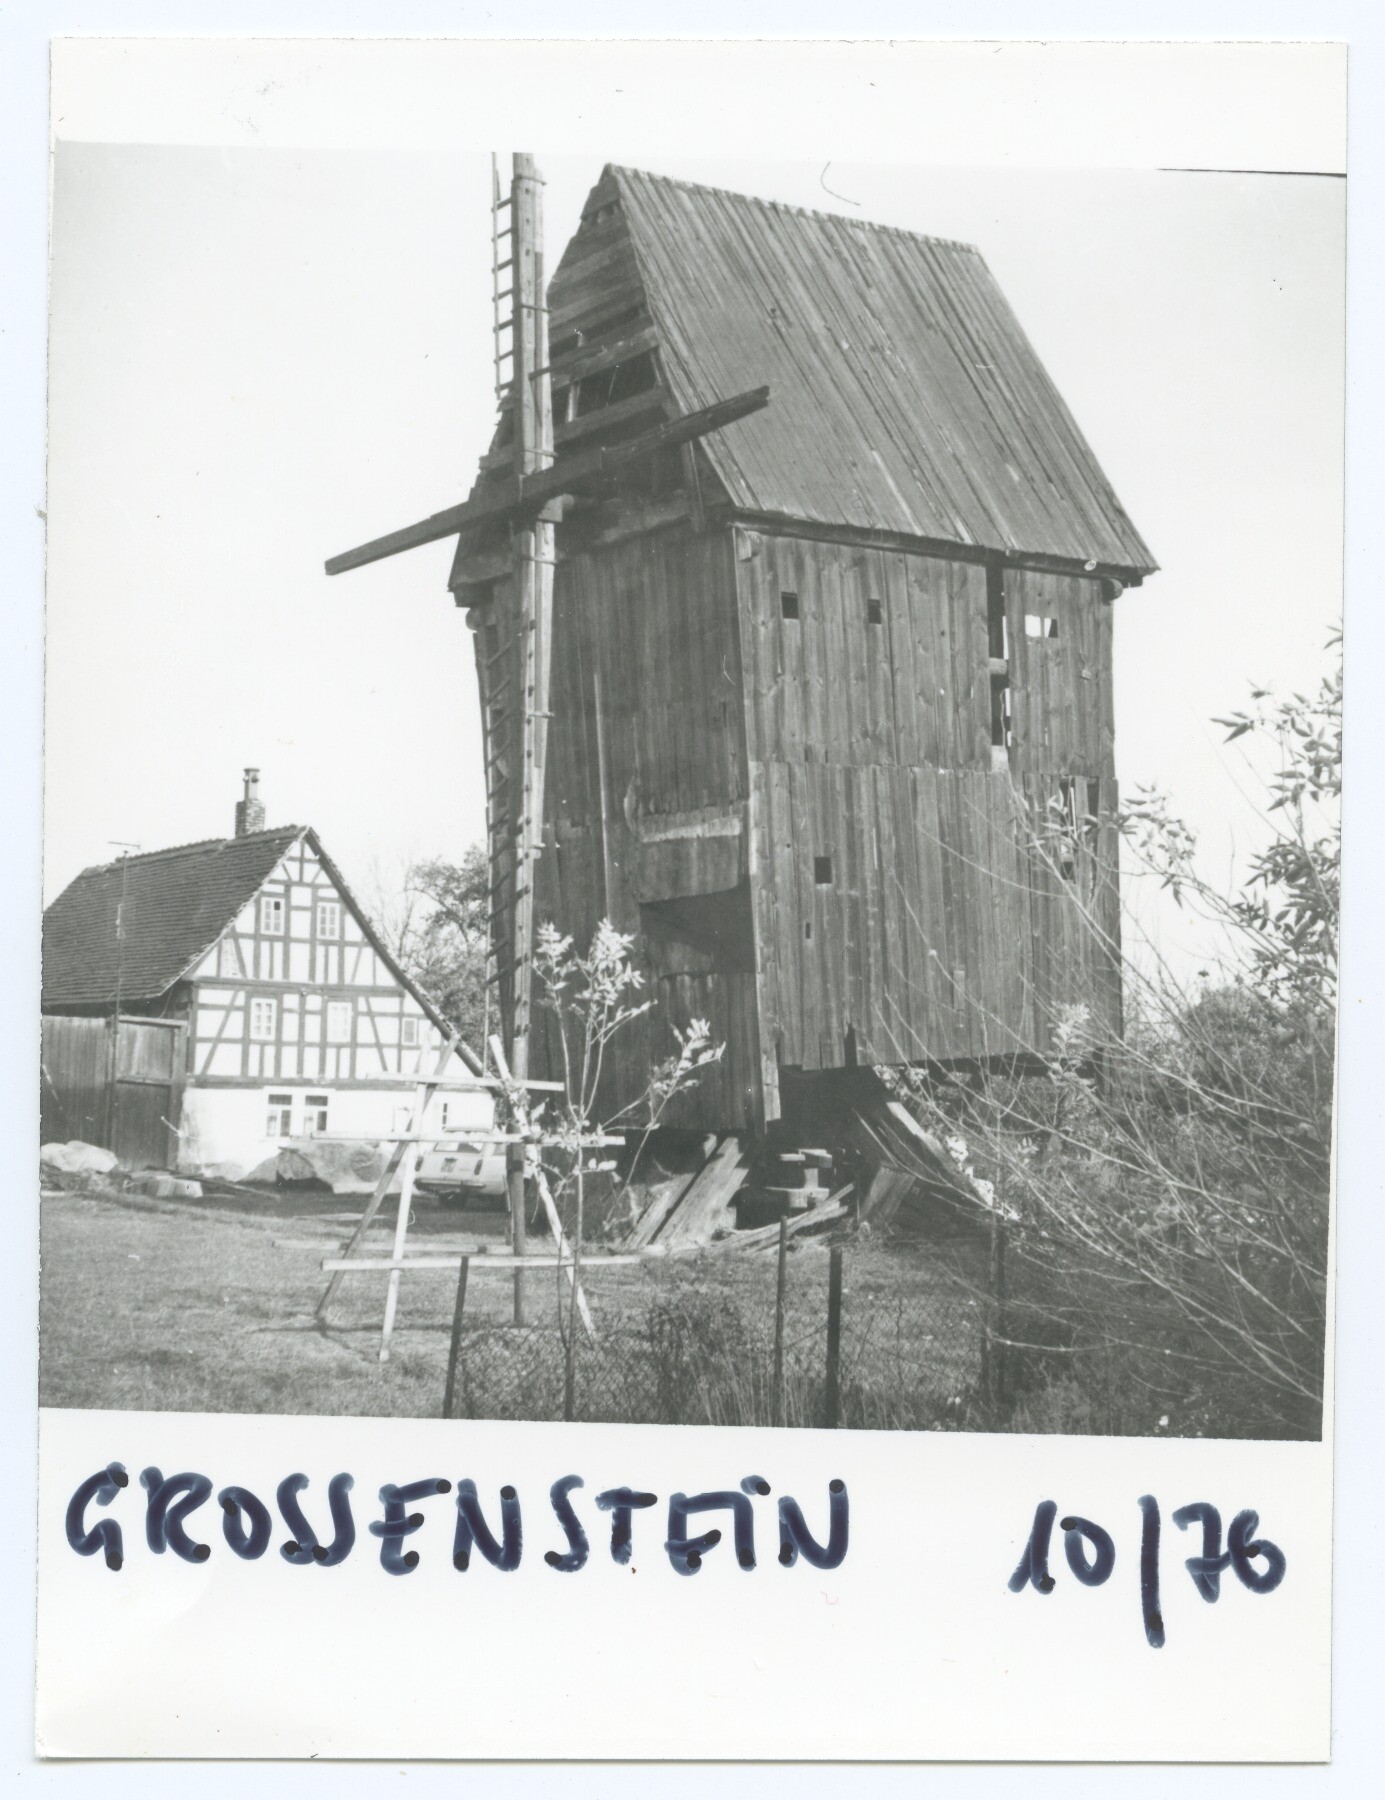 Bockwindmühle Großenstein (Historische Mühle von Sanssouci CC BY-NC-ND)